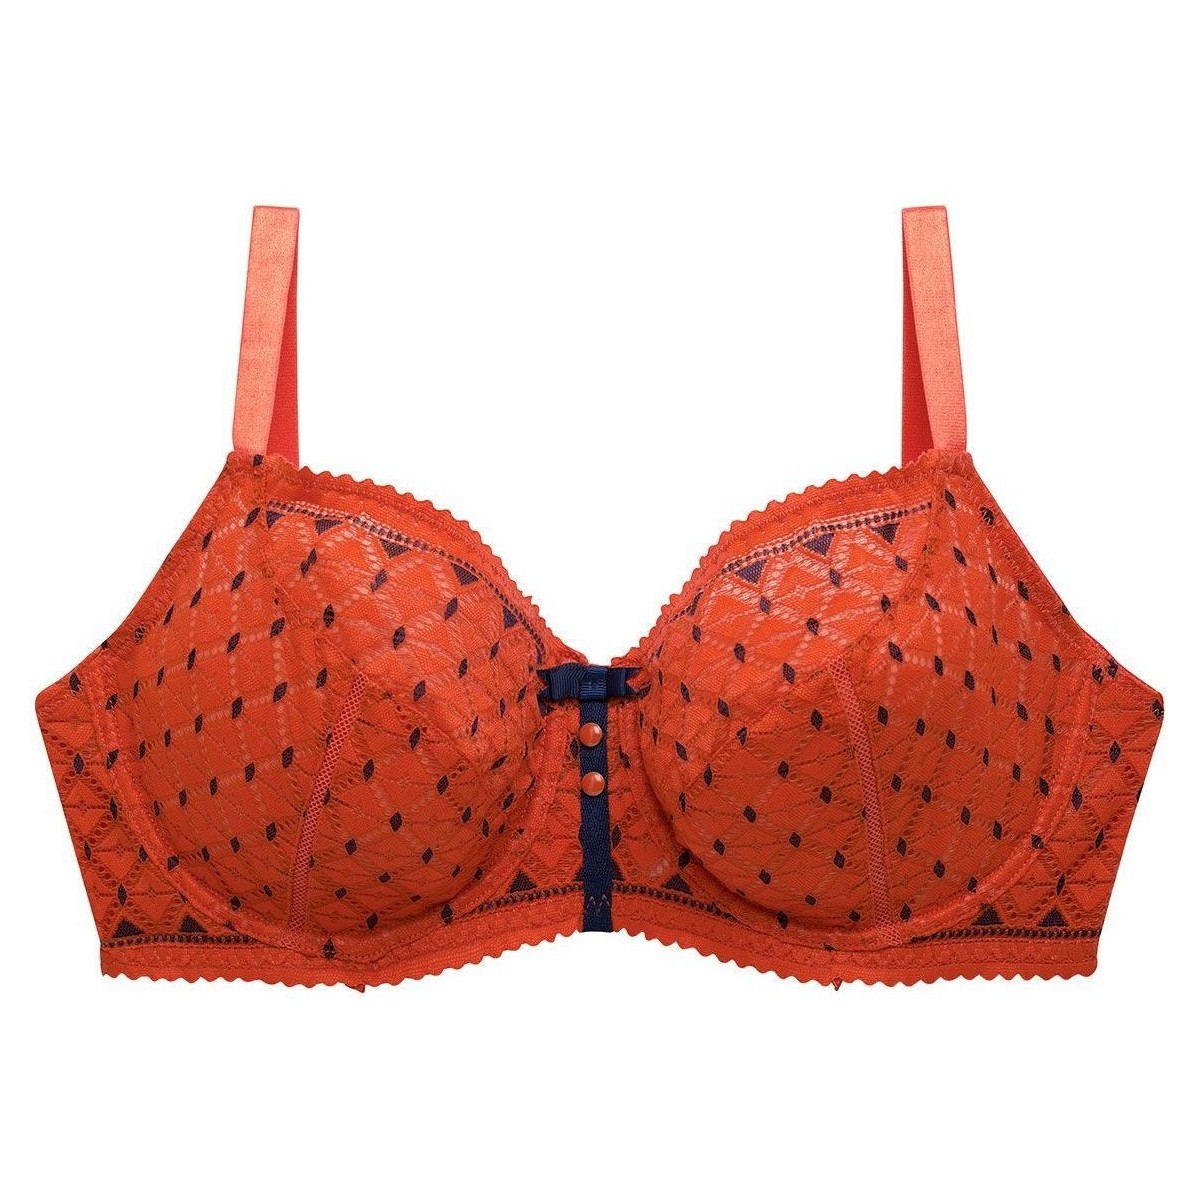 Sous-vêtements Femme Emboitants Pomm'poire Soutien-gorge grand maintien orange Pamplemousse Orange